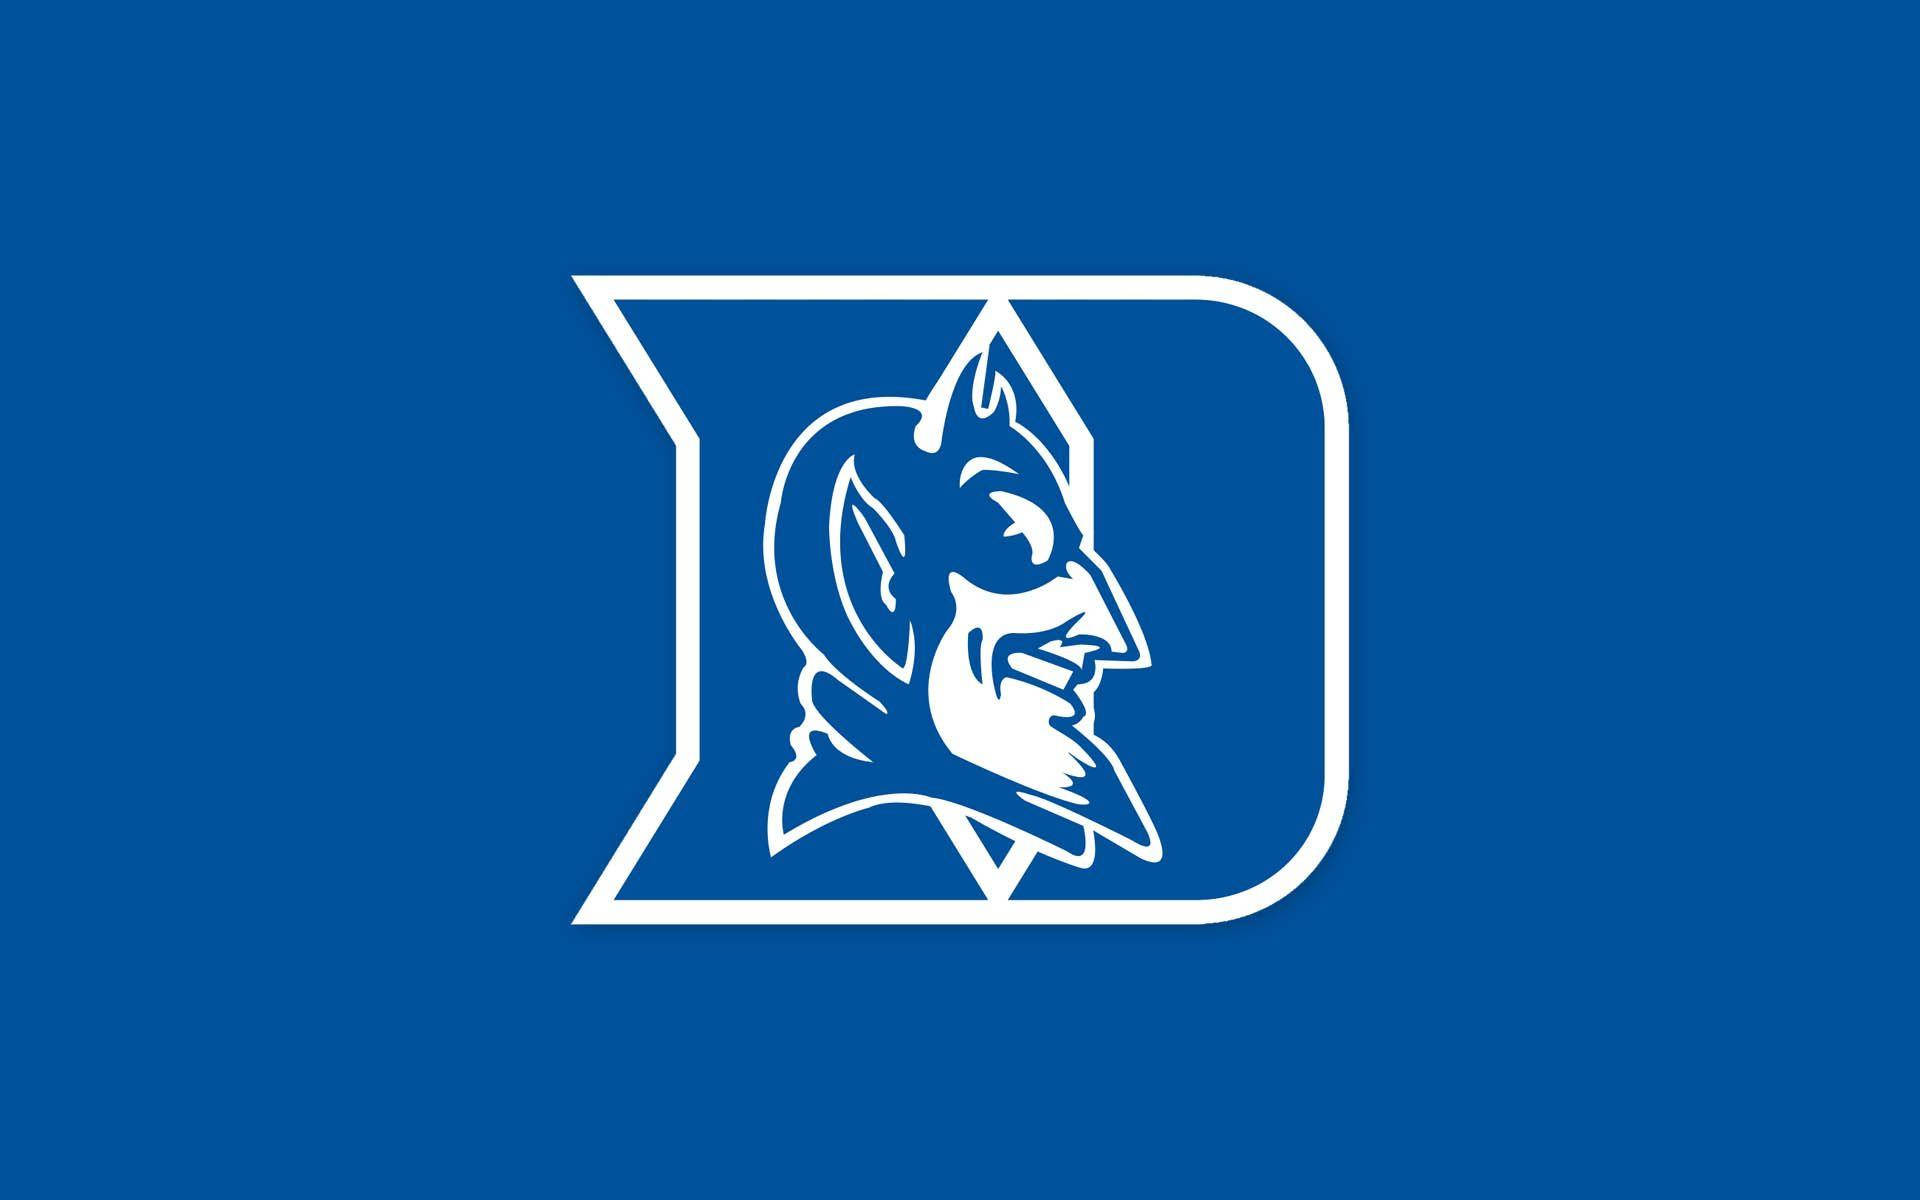 Duke Blue Devils Secondary Logo Background